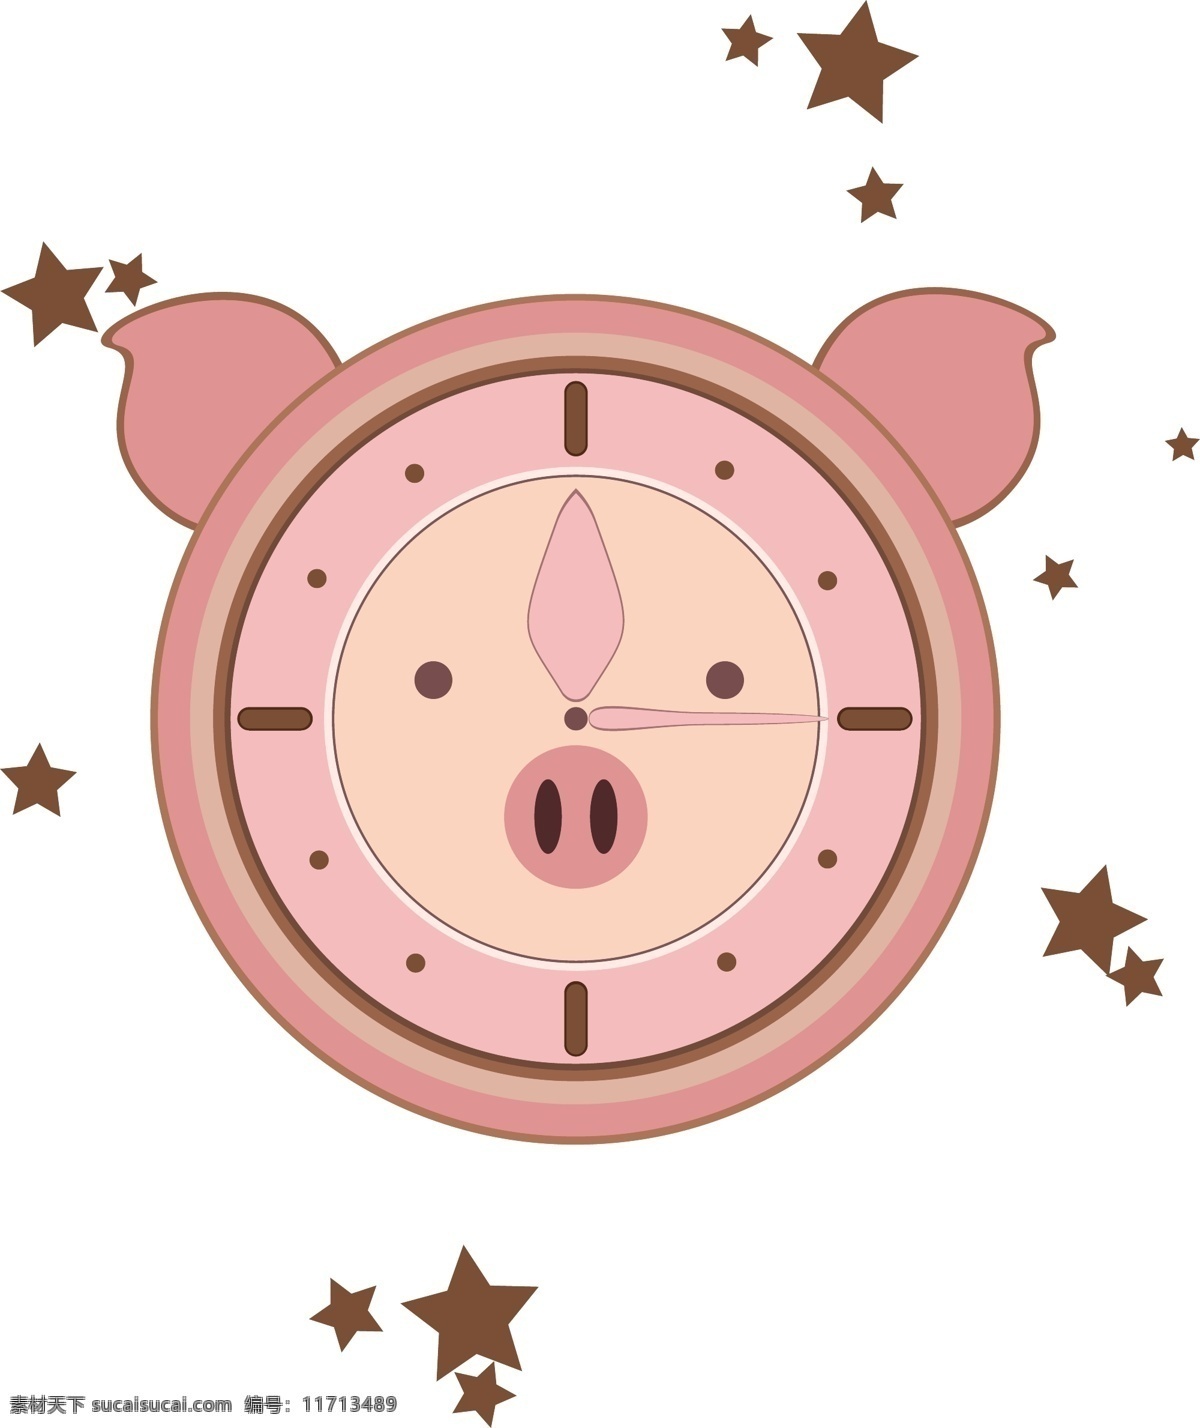 元素 生活用品 小 猪 钟表 小猪钟表 粉色小猪 卡通钟表 设计元素